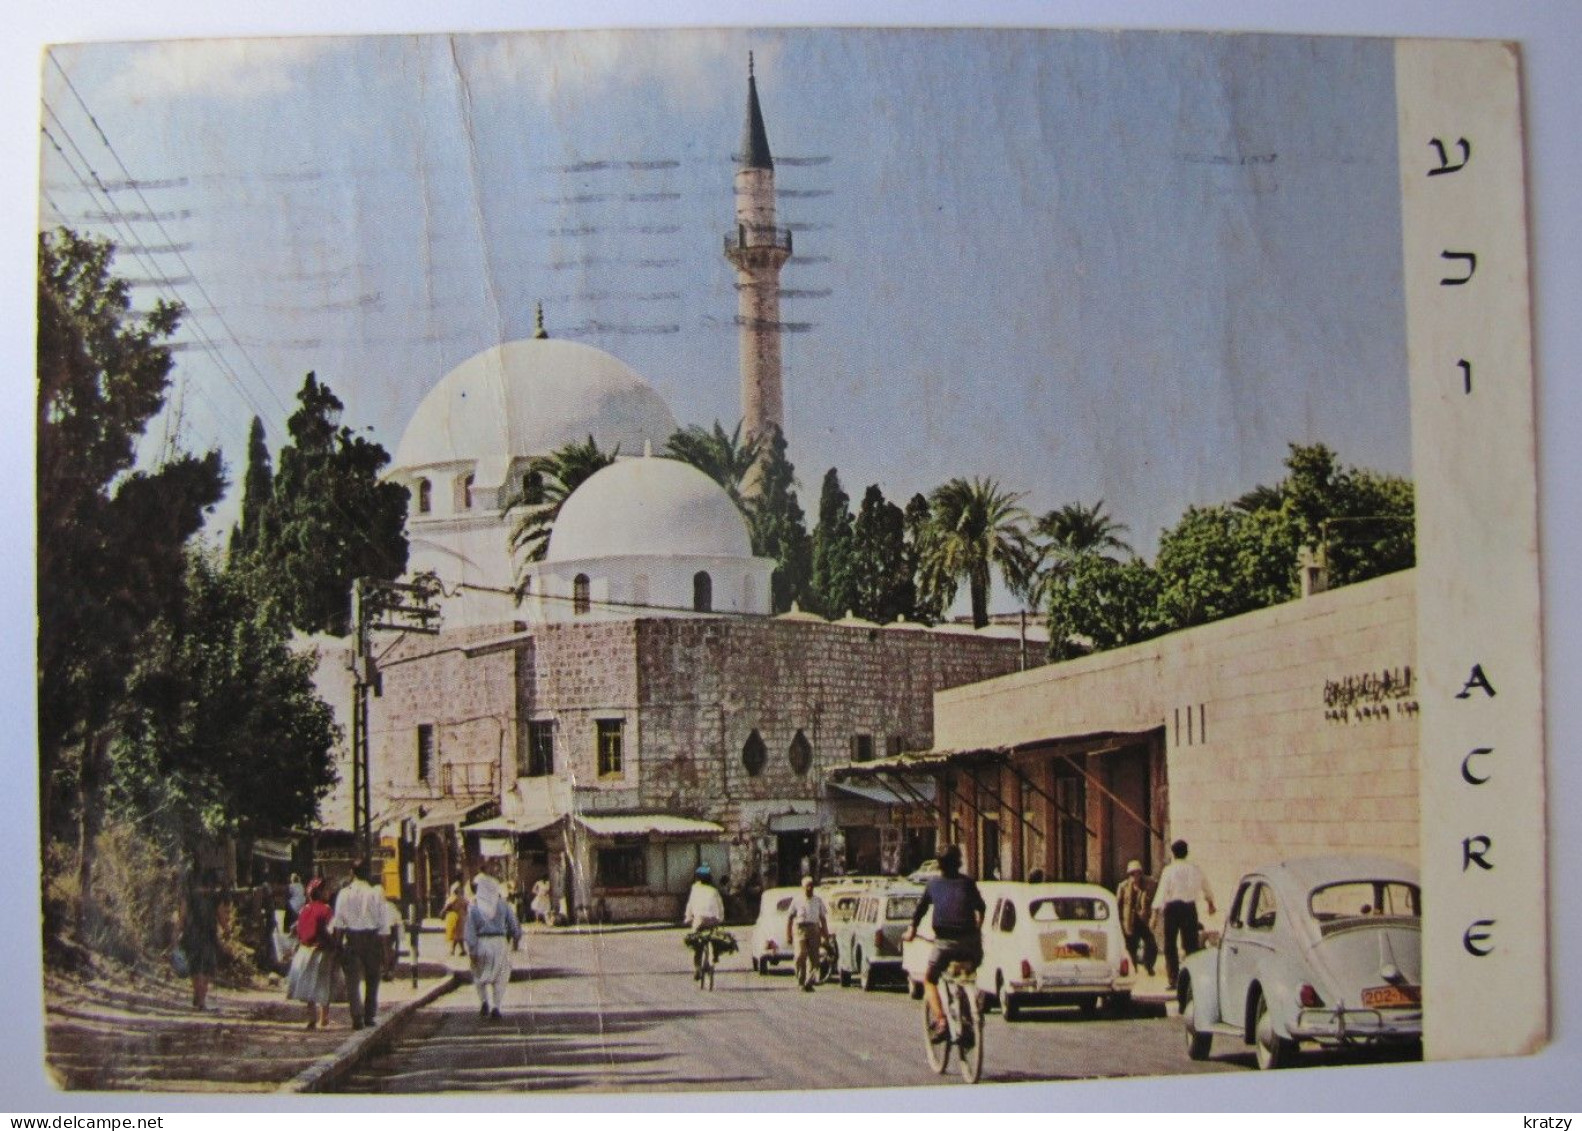 ISRAËL - ACRE - El Jazzar's Mosque - Israel